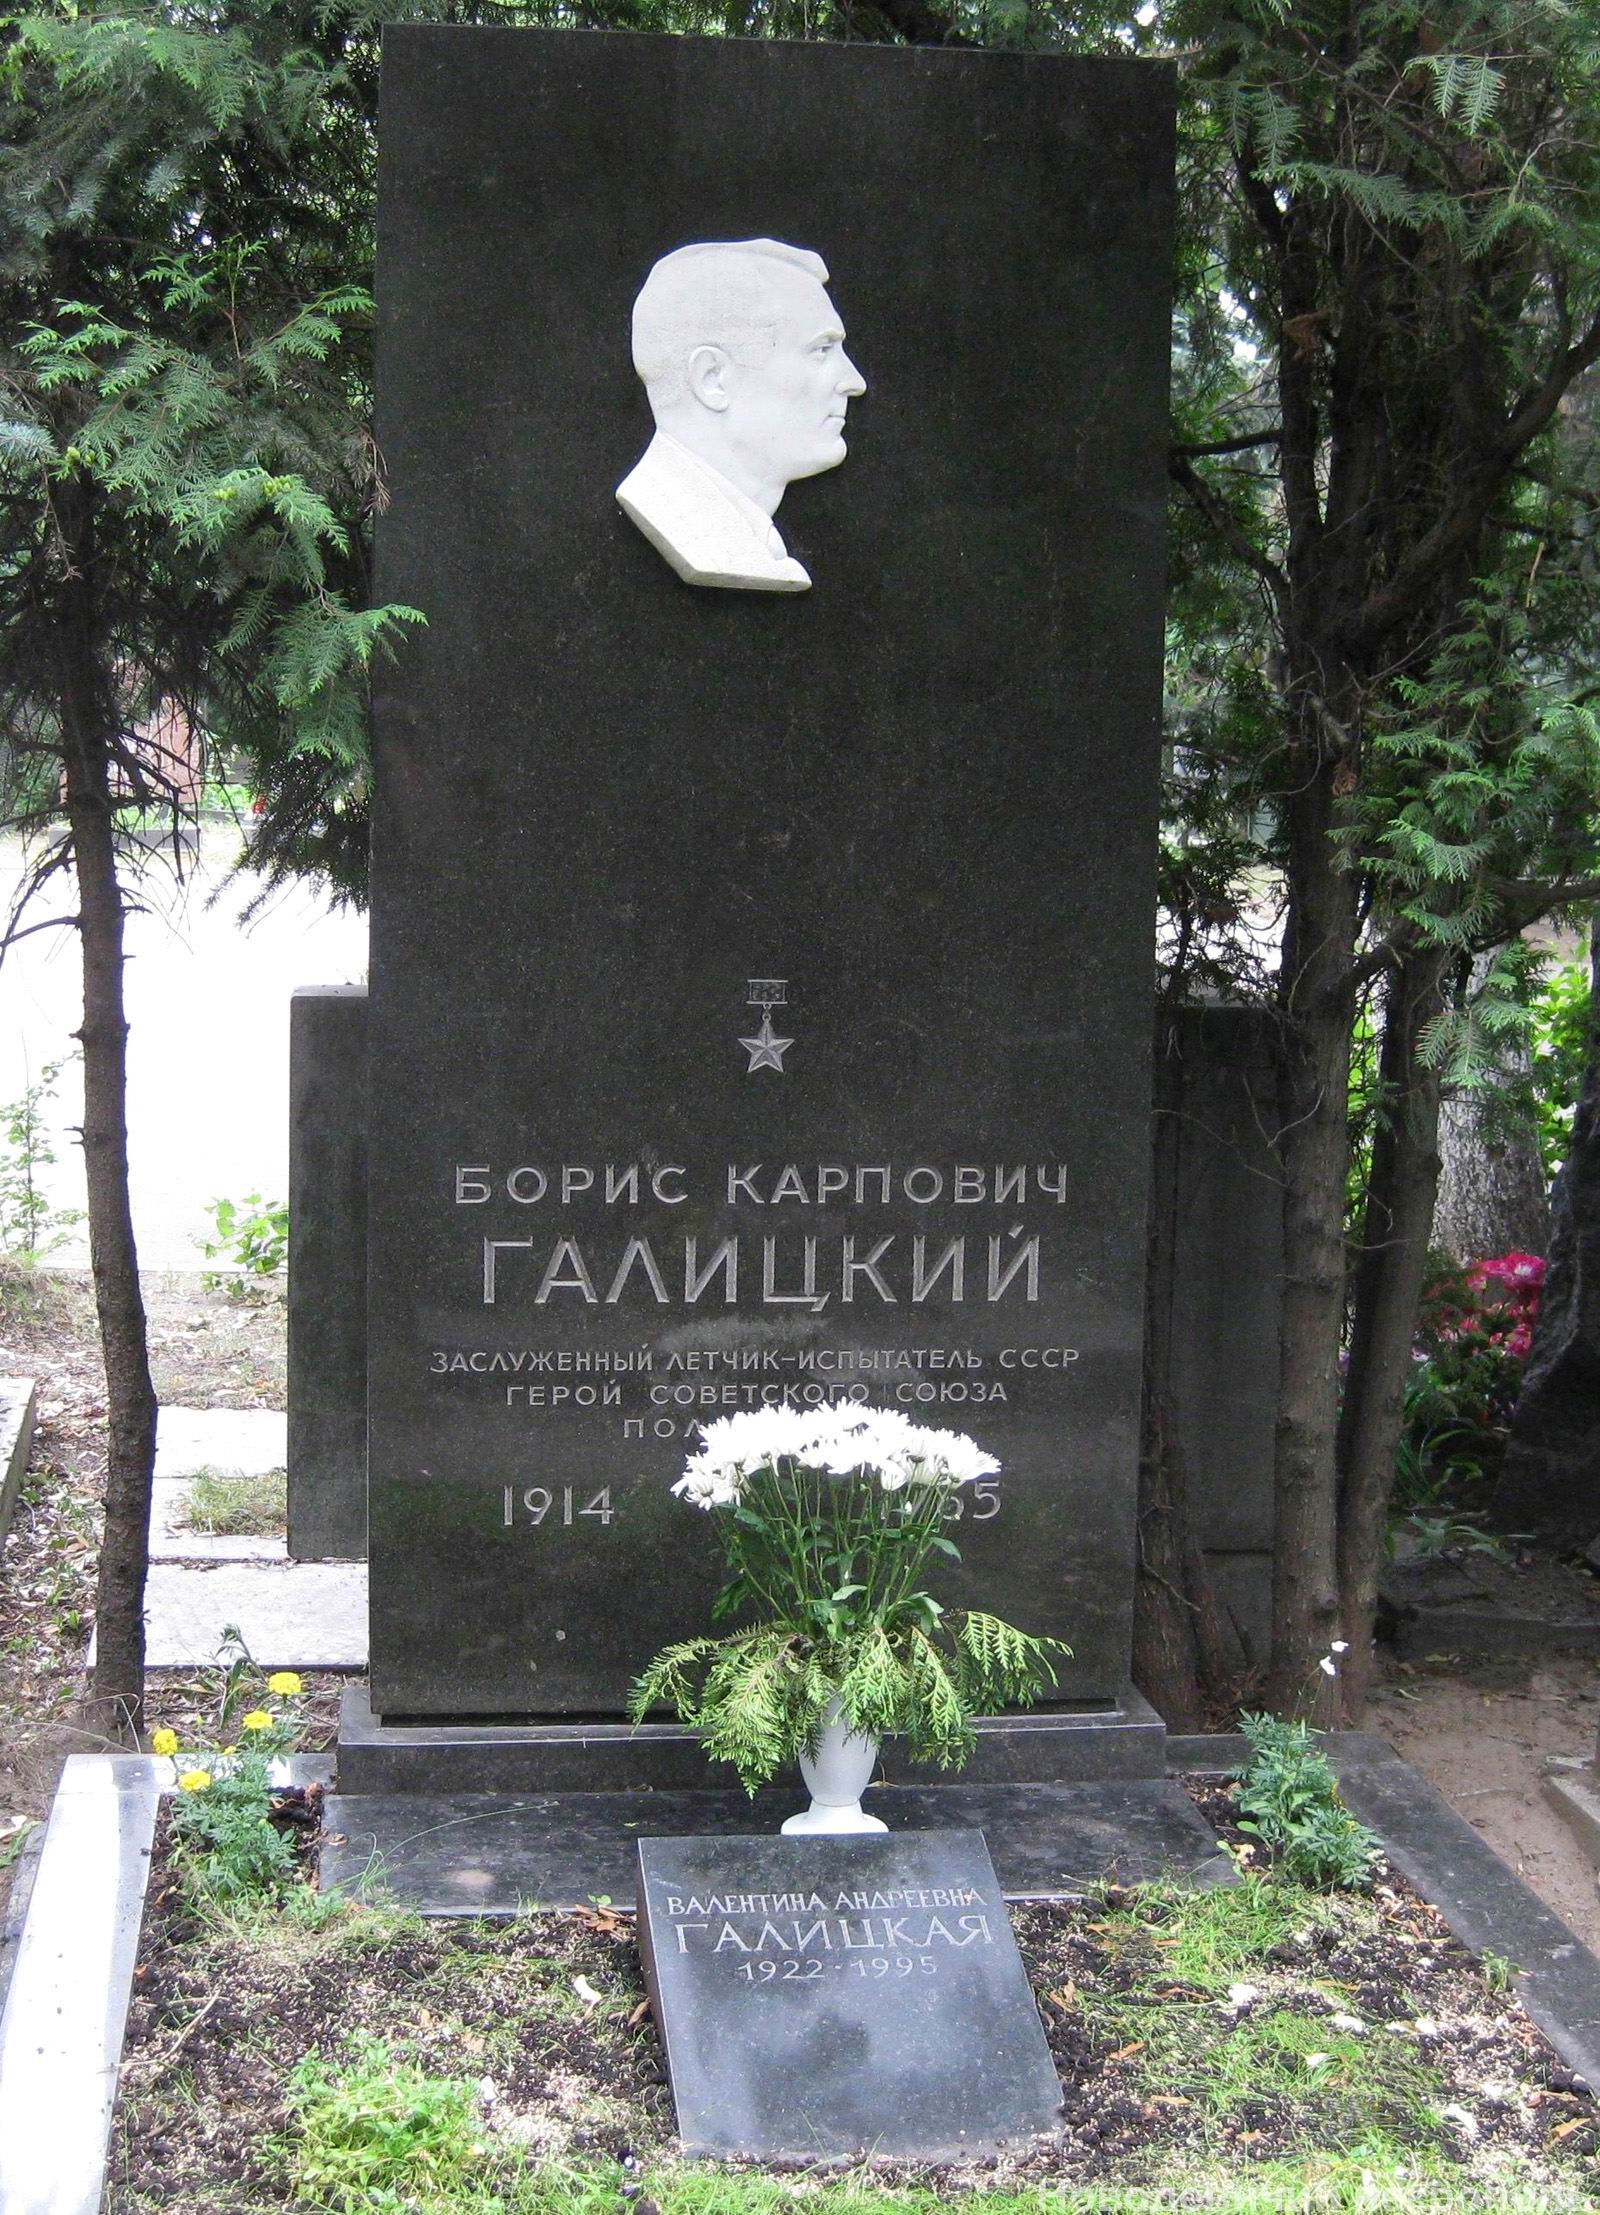 Памятник на могиле Галицкого Б.К. (1914-1965), ск. В.Сонин, на Новодевичьем кладбище (6-24-12).